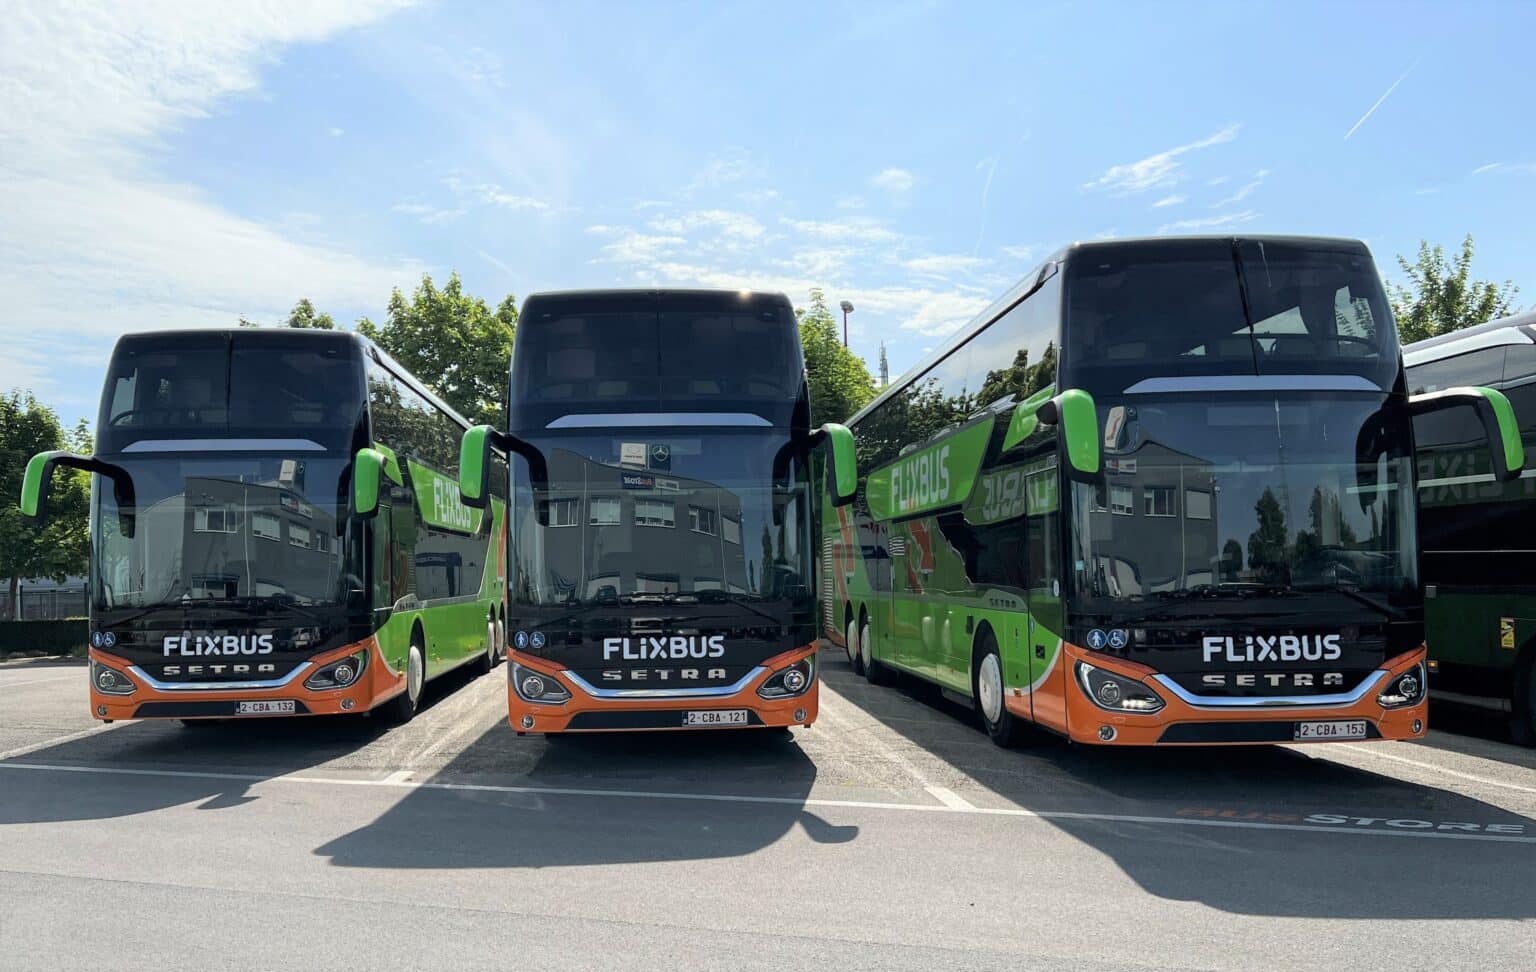 Flixbus overview